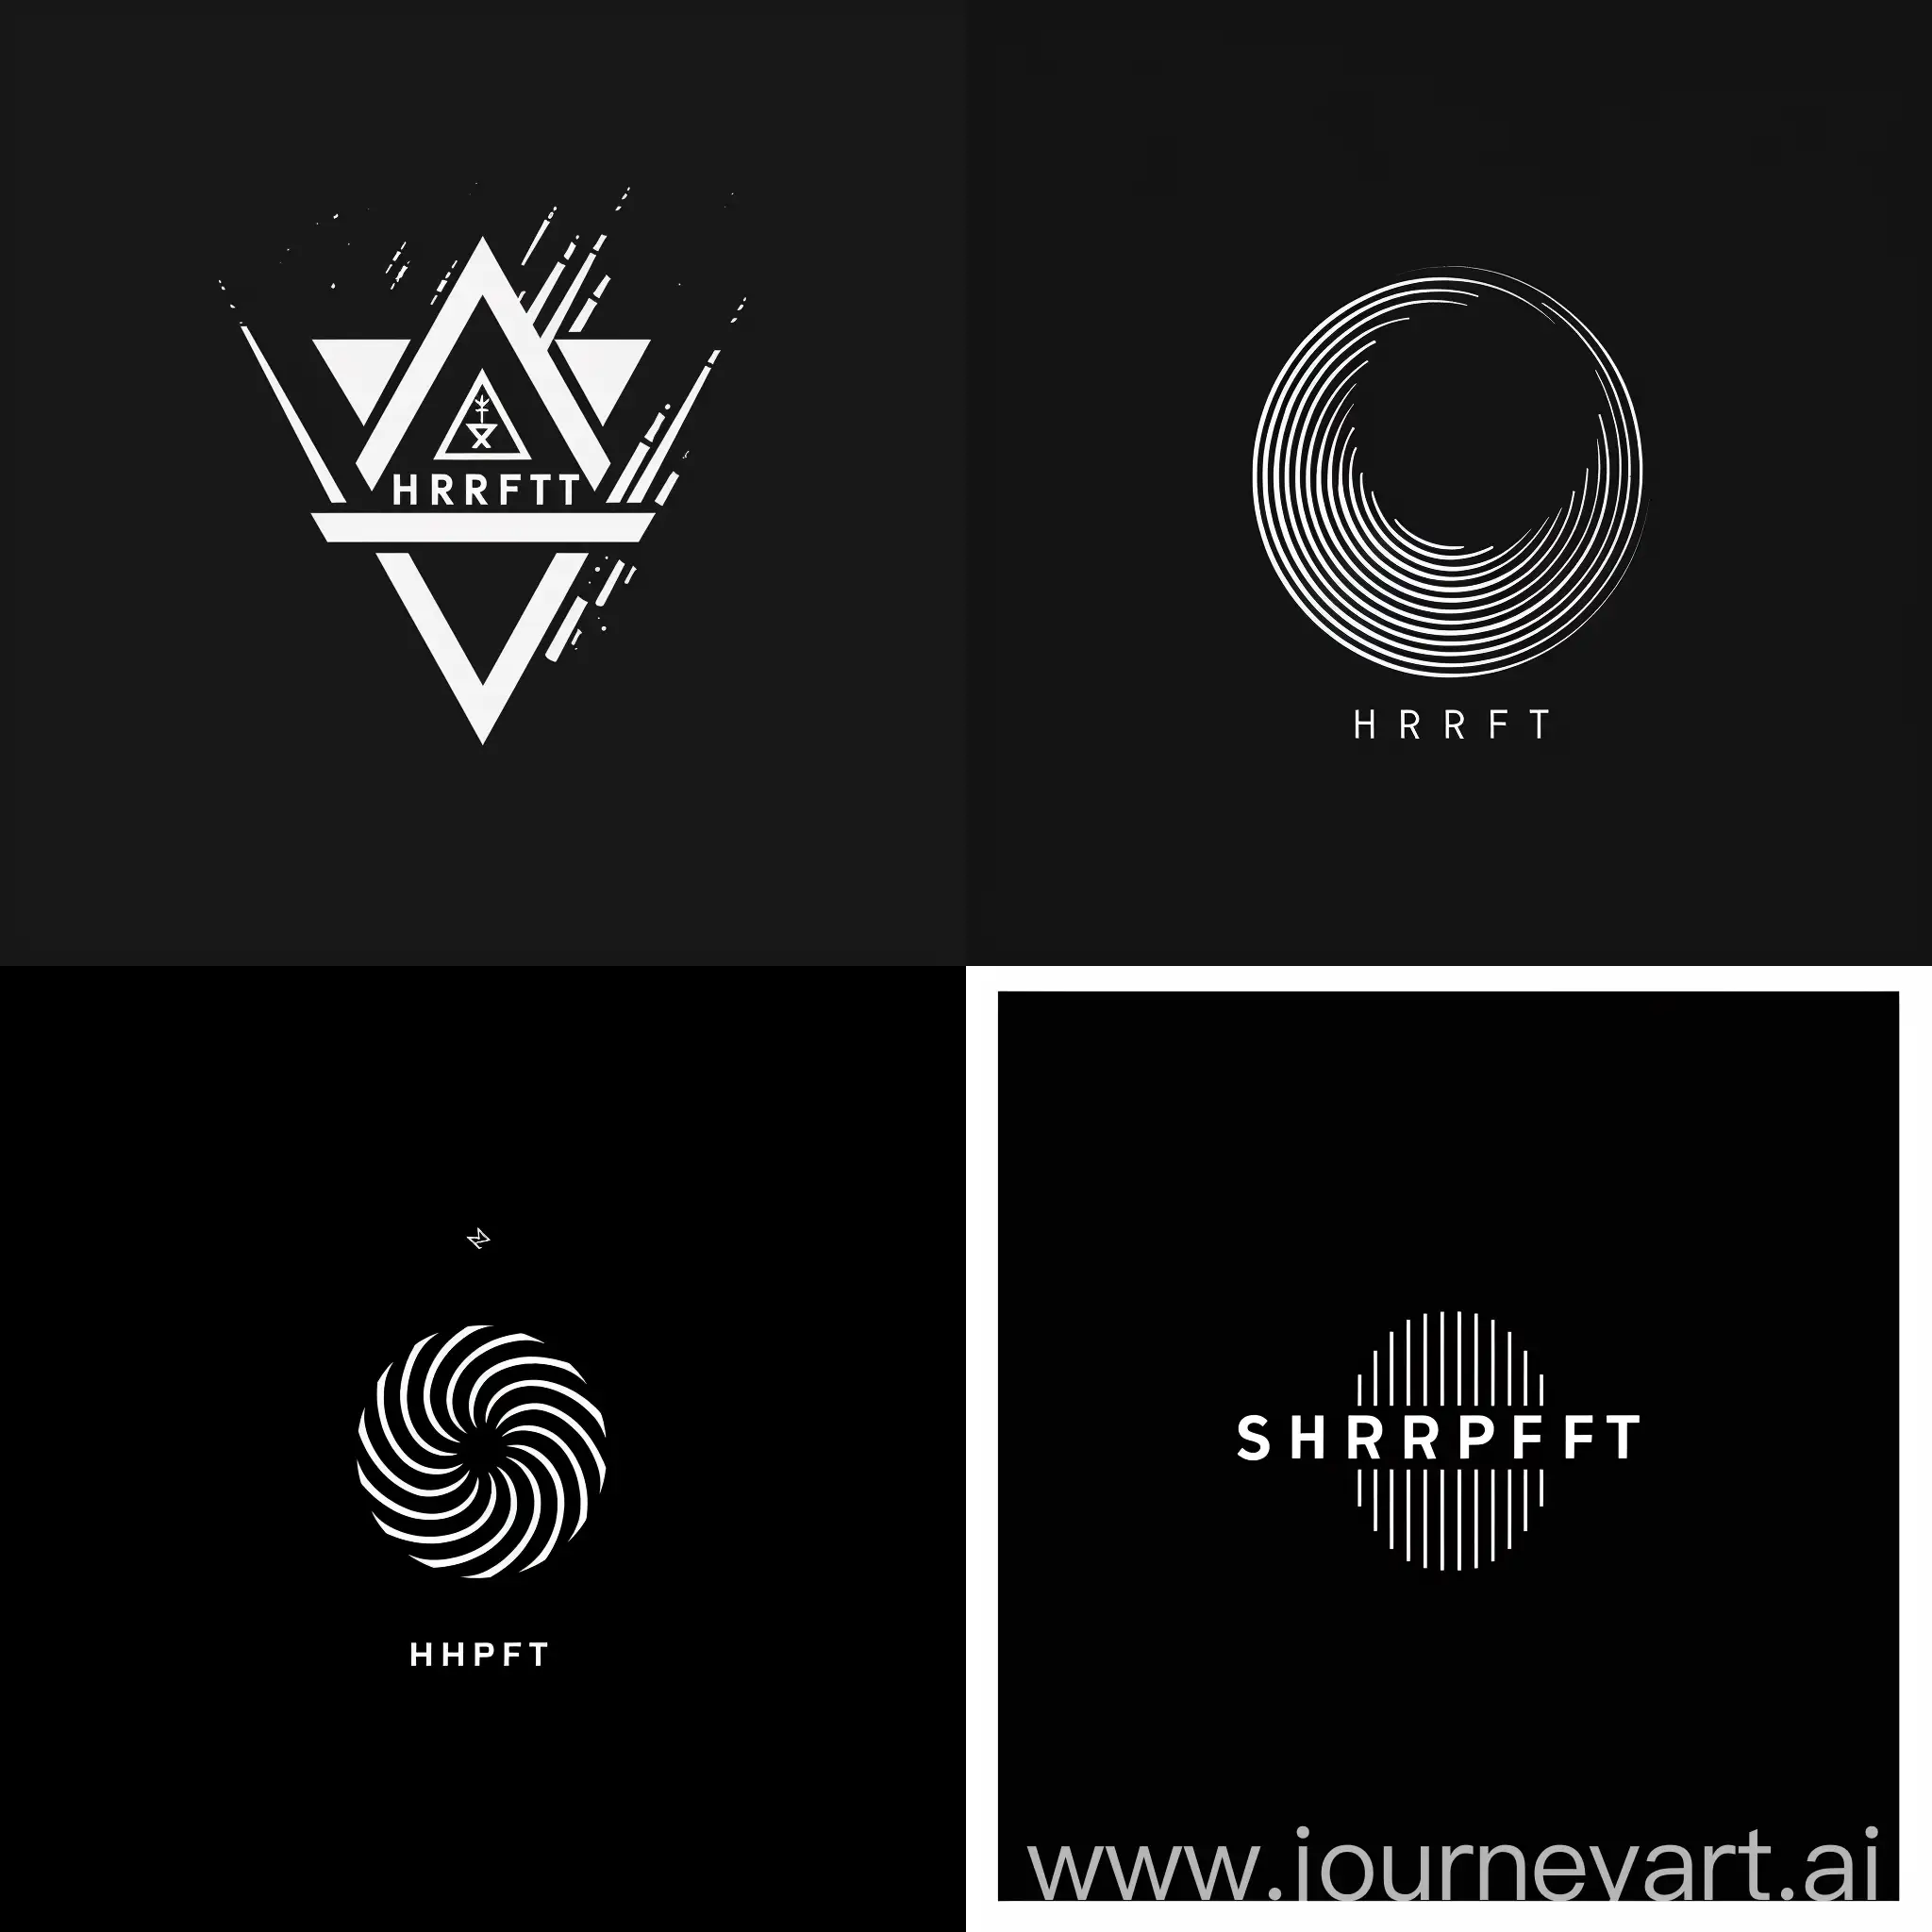 сделай для меня логотип группы музыкантов под название SHRIFT в минималистичном стиле с их названием